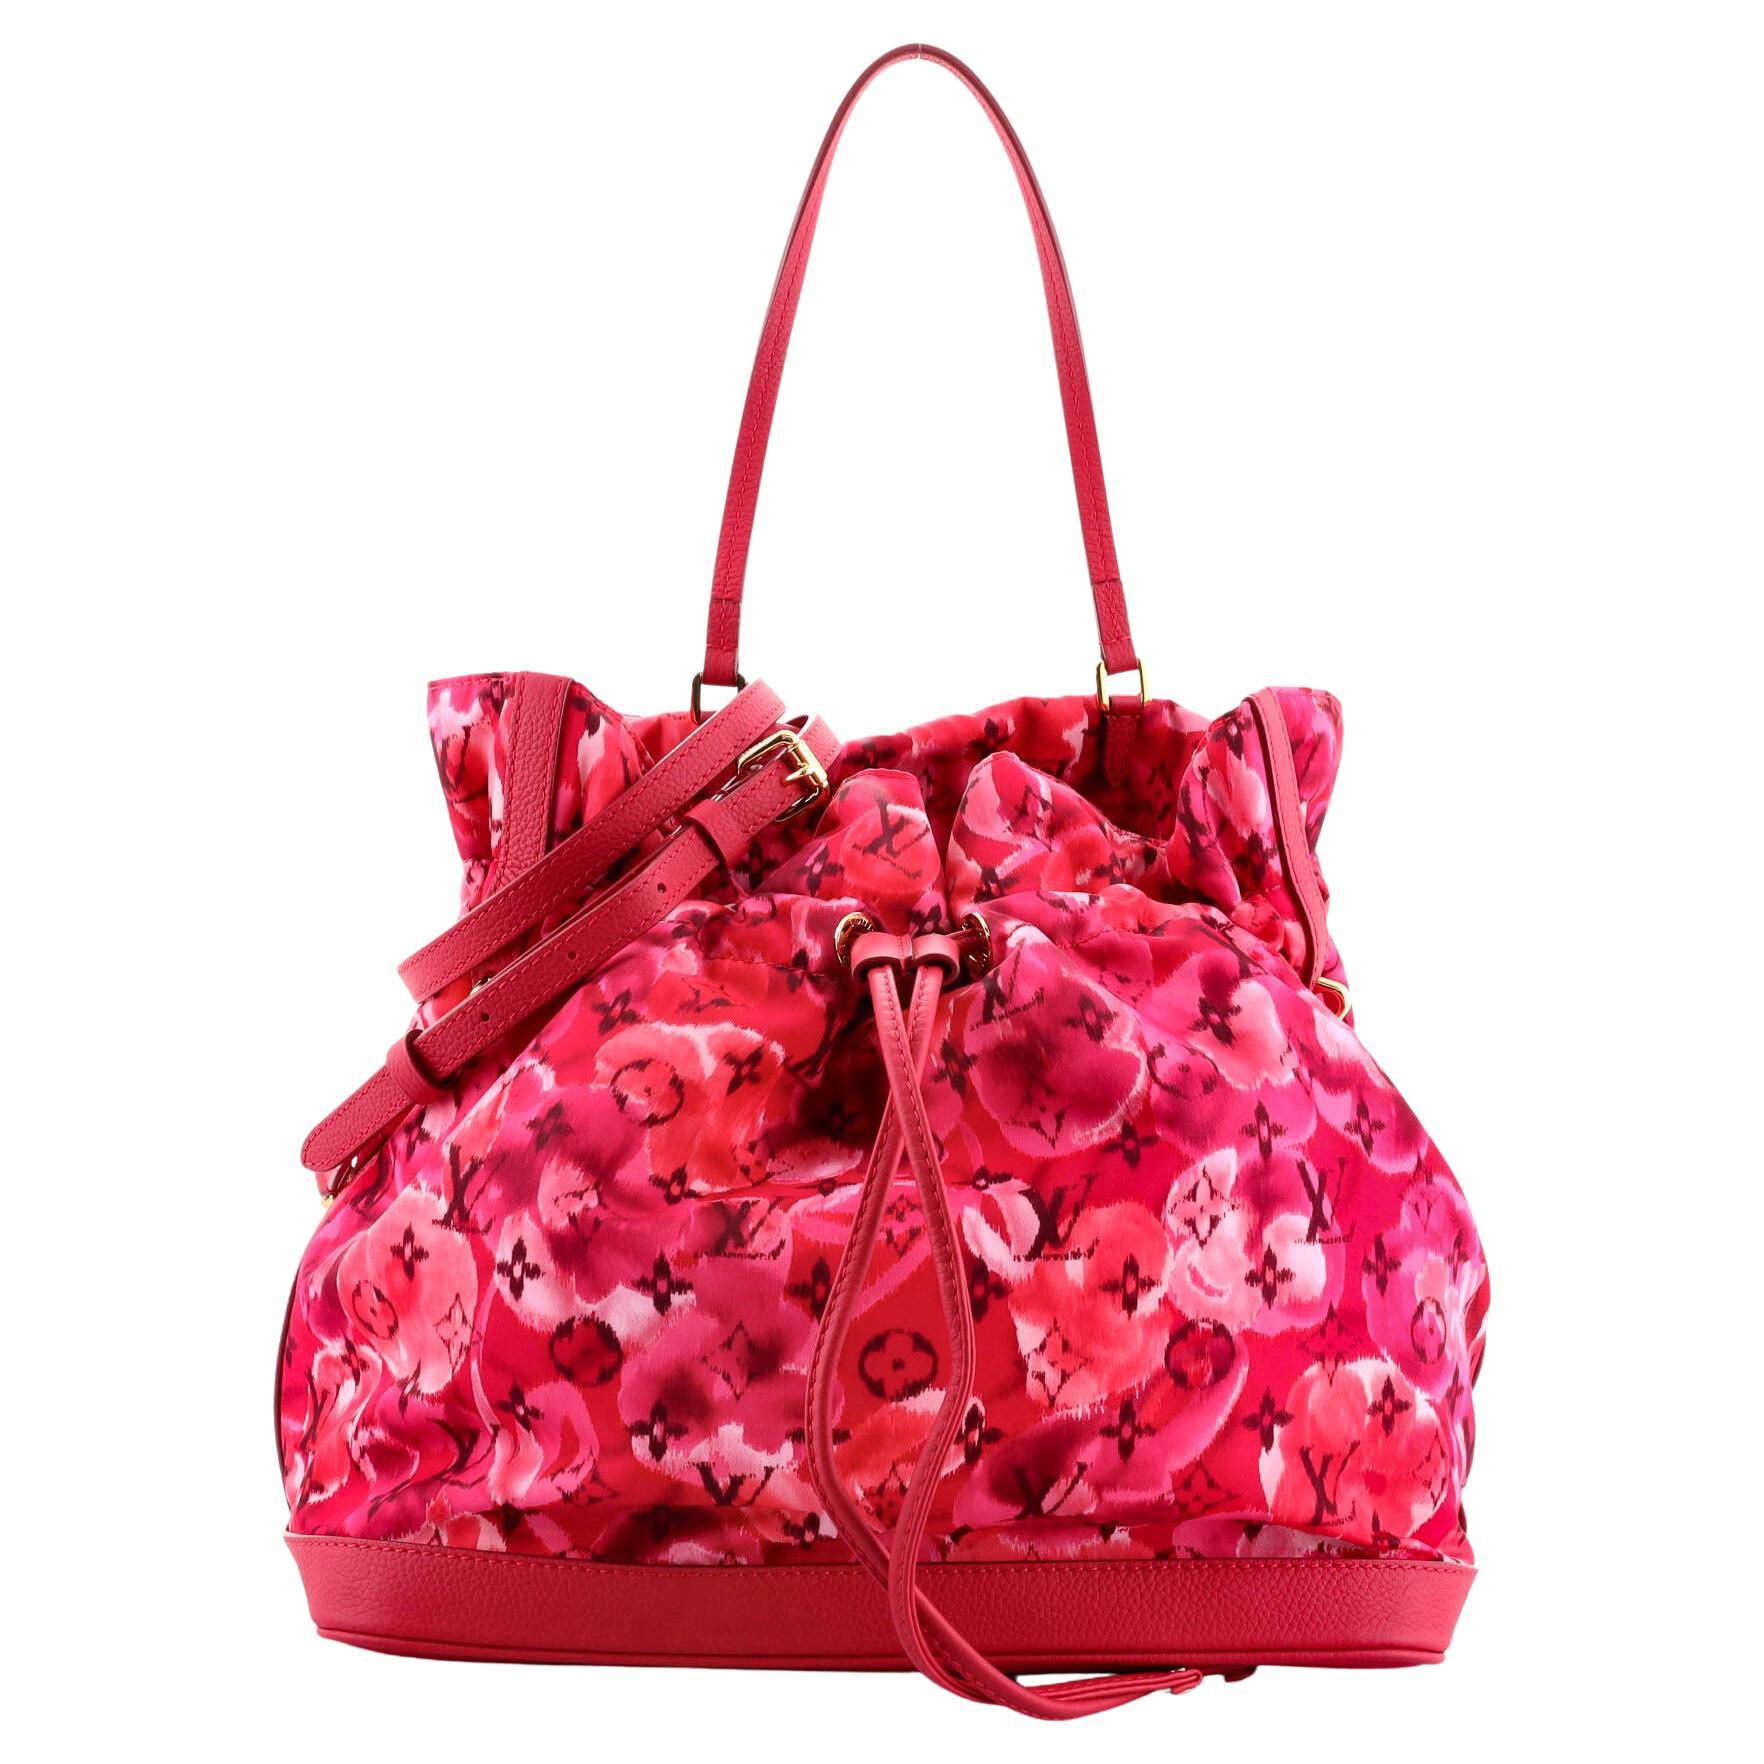 Vuitton Handbag Flap Bag - 176 For Sale on 1stDibs  louis vuitton bag with  flap, flap bag louis vuitton, louis vuitton crossbody with flap